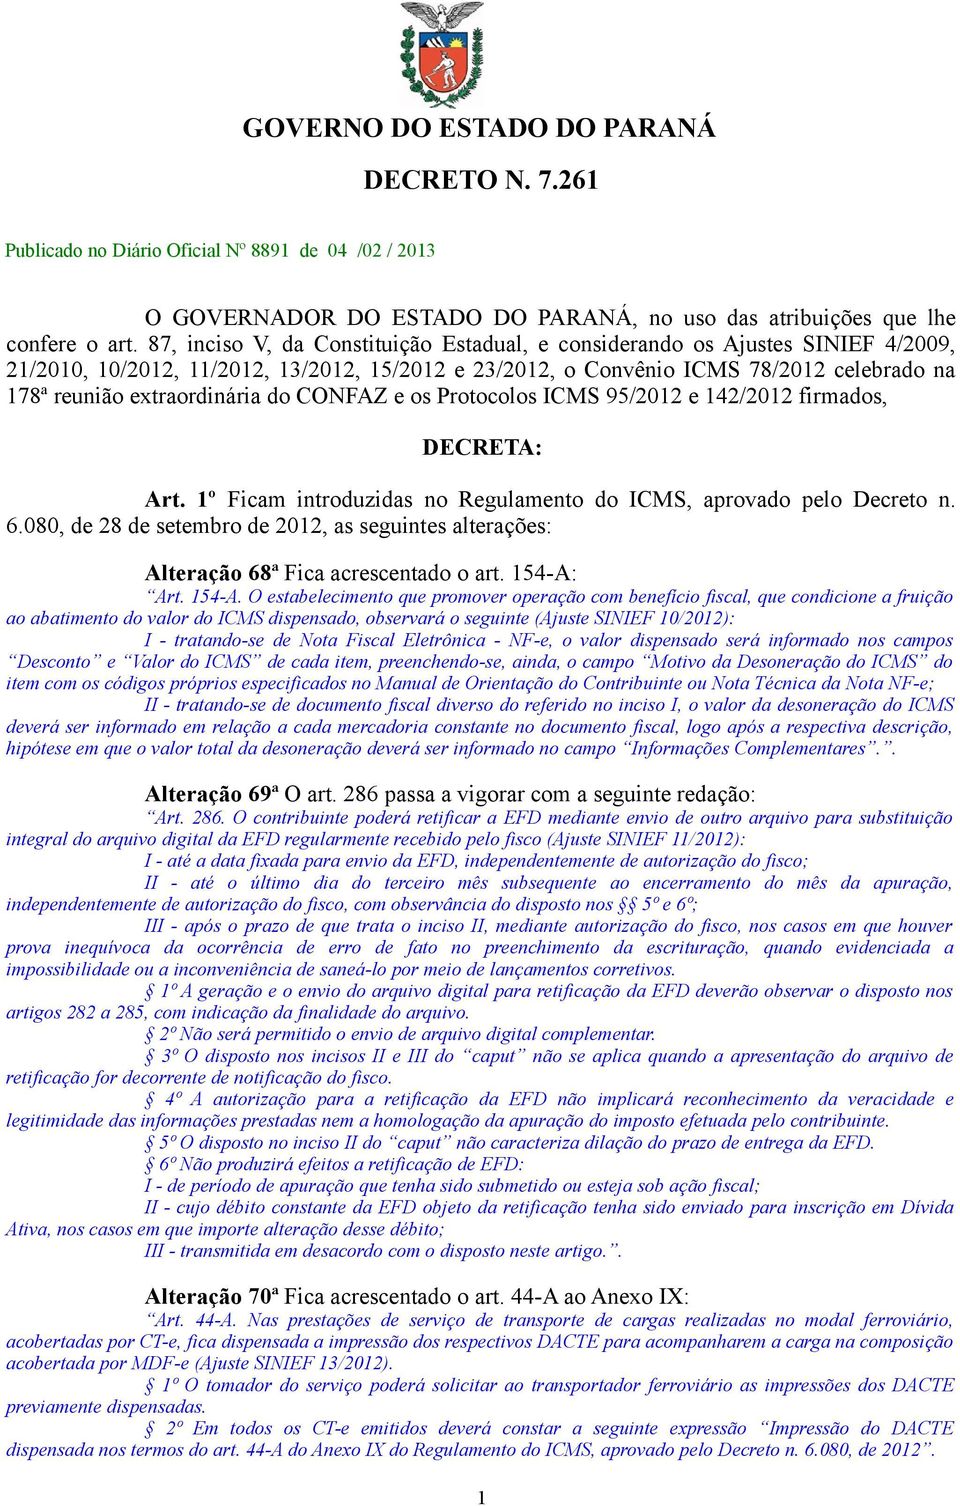 extraordinária do CONFAZ e os Protocolos ICMS 95/2012 e 142/2012 firmados, DECRETA: Art. 1º Ficam introduzidas no Regulamento do ICMS, aprovado pelo Decreto n. 6.